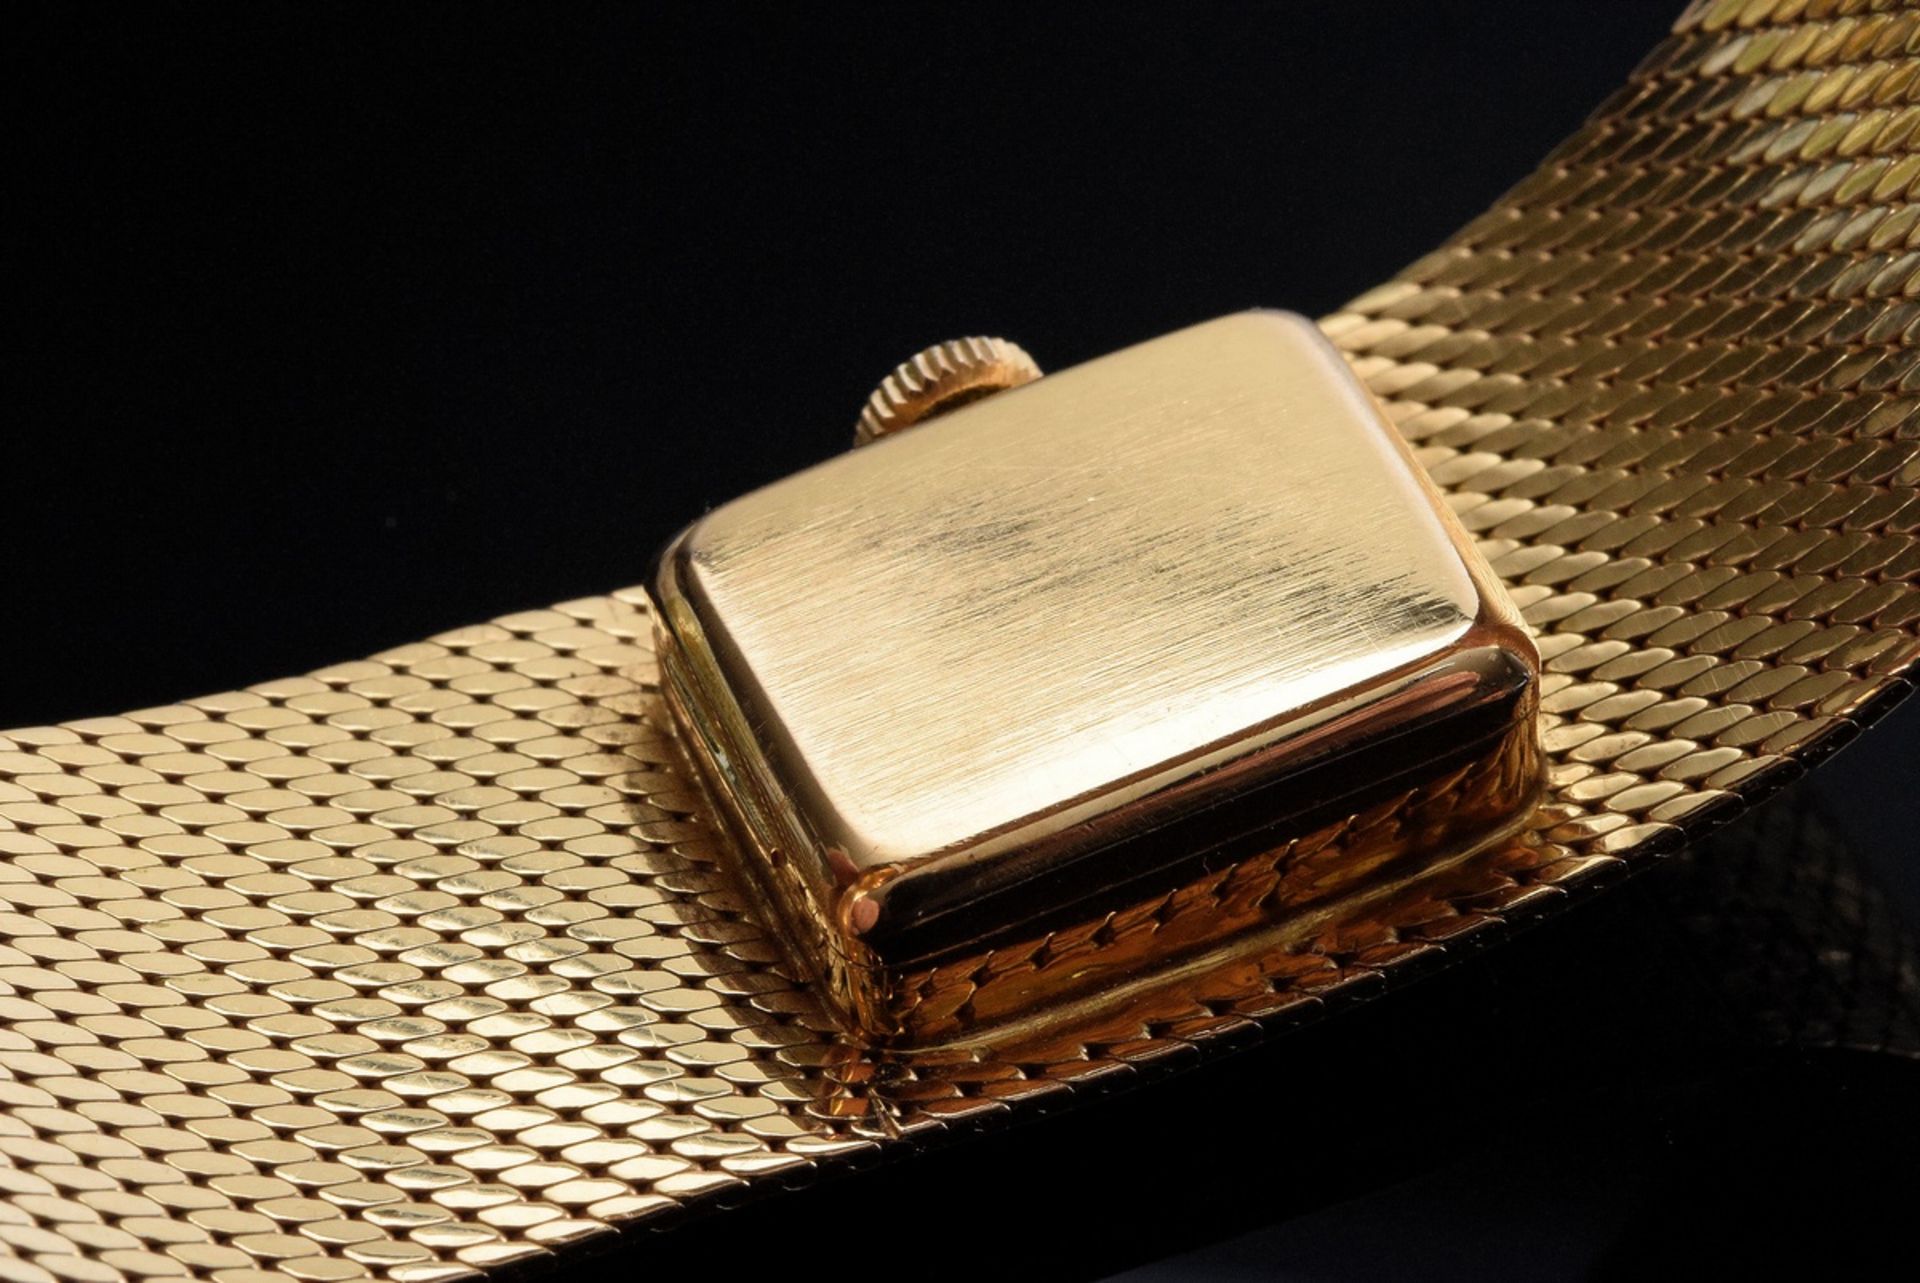 RG 585 Cyma Armbanduhr, Handaufzug, um 1960, 50,3g, L. 17,2cm, gangbar (keine Garantie auf Werk und - Bild 4 aus 4